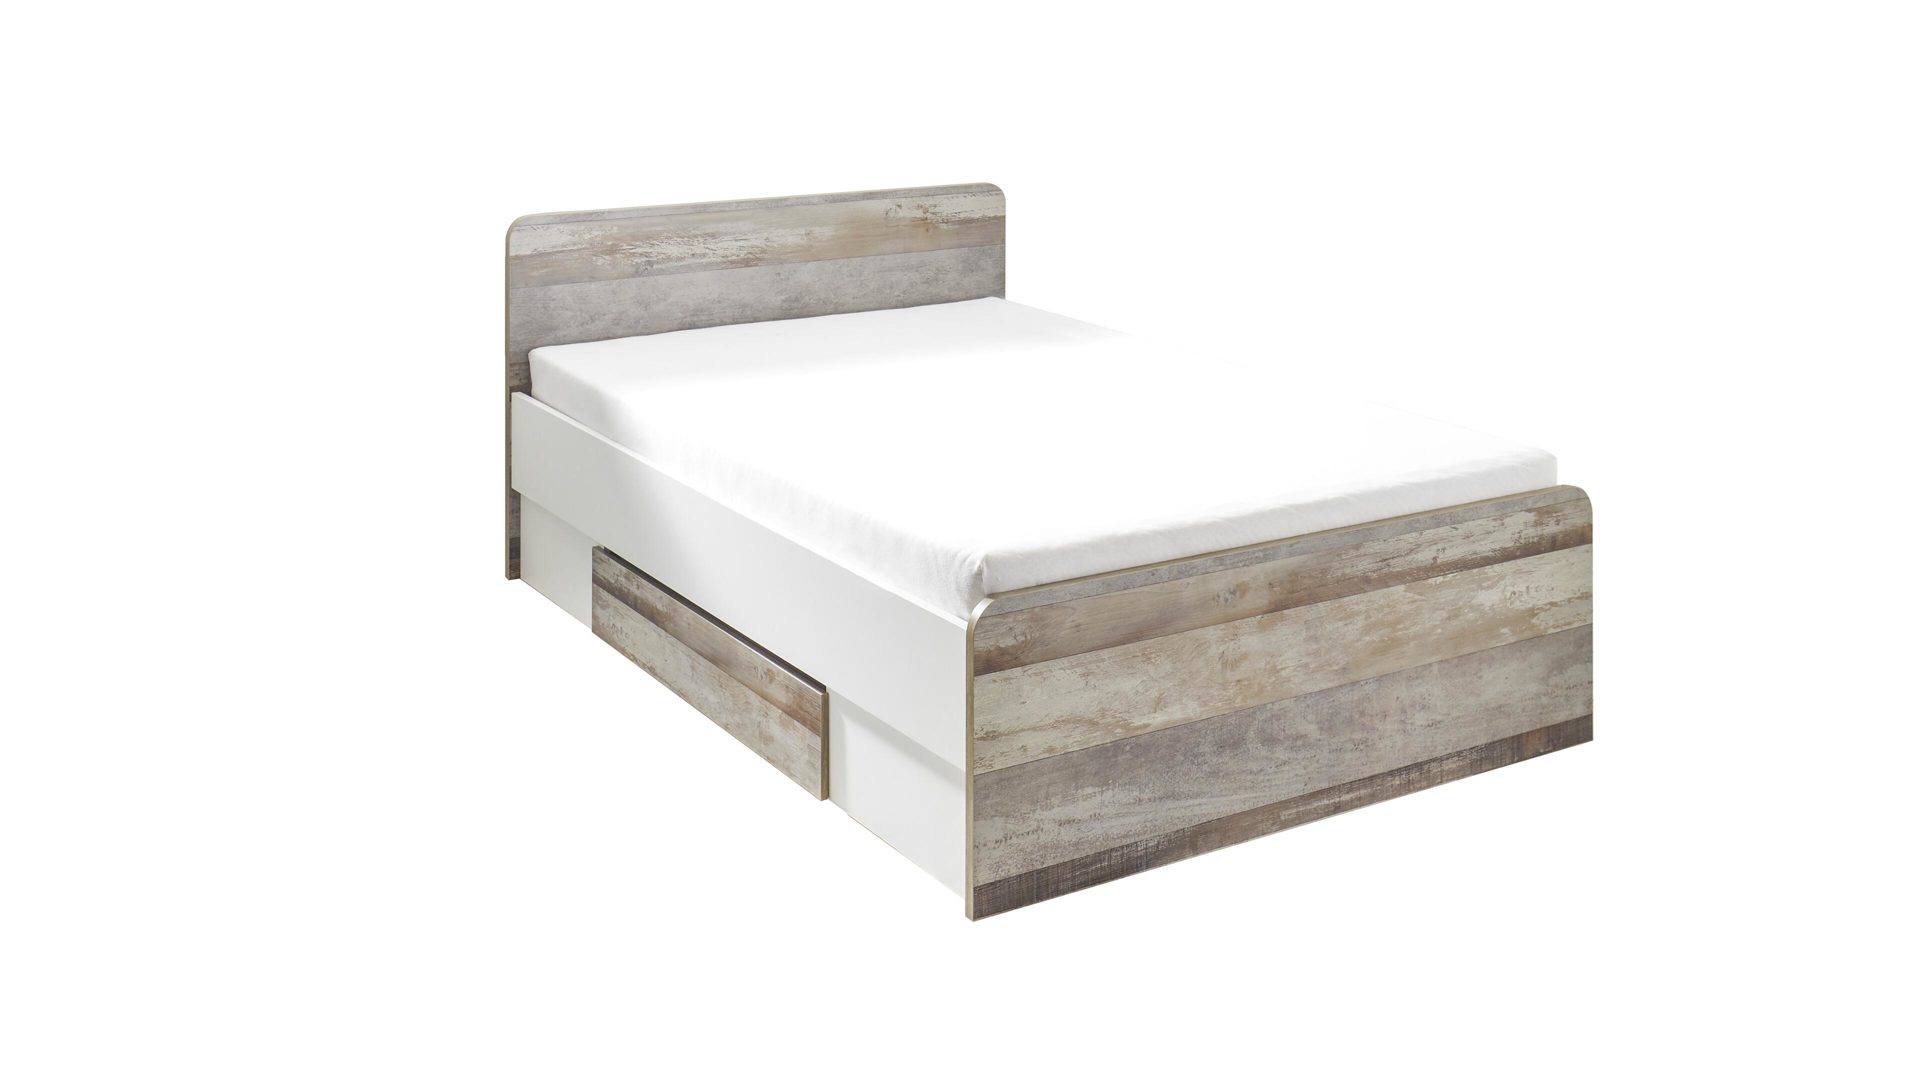 Einzelbett Begabino aus Holz in Holzfarben Bettgestell driftwoodfarbene & weiße Kunststoffoberflächen – Liegefläche ca. 140 x 200 cm